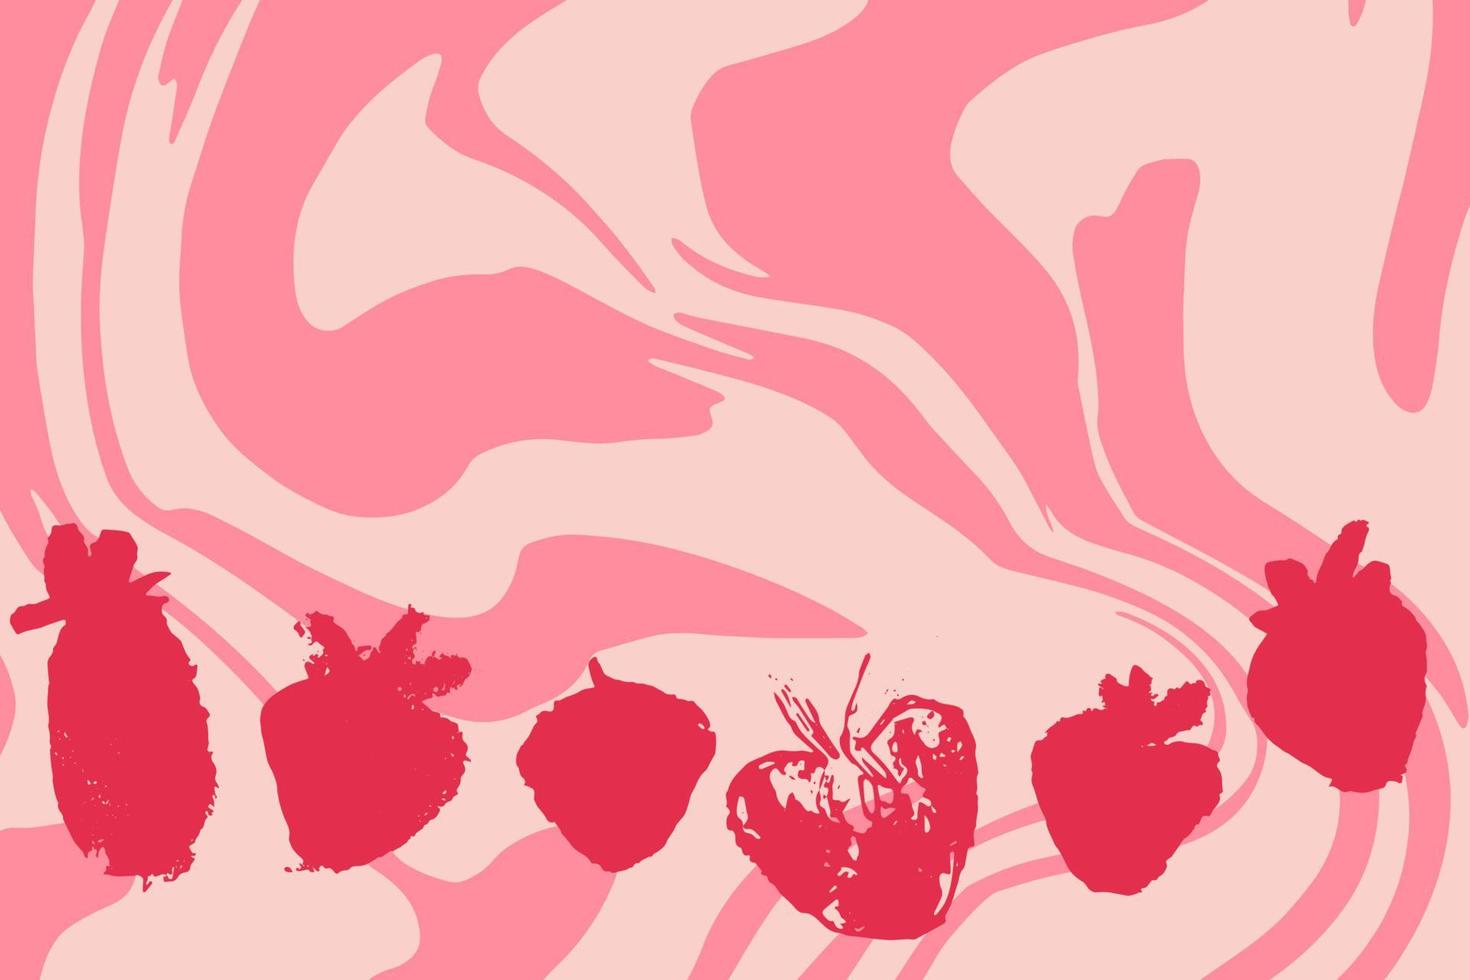 carte avec ensemble de fraises abstraites dessinées à la main sur fond rose, tourbillon de lait de fruits. vecteur